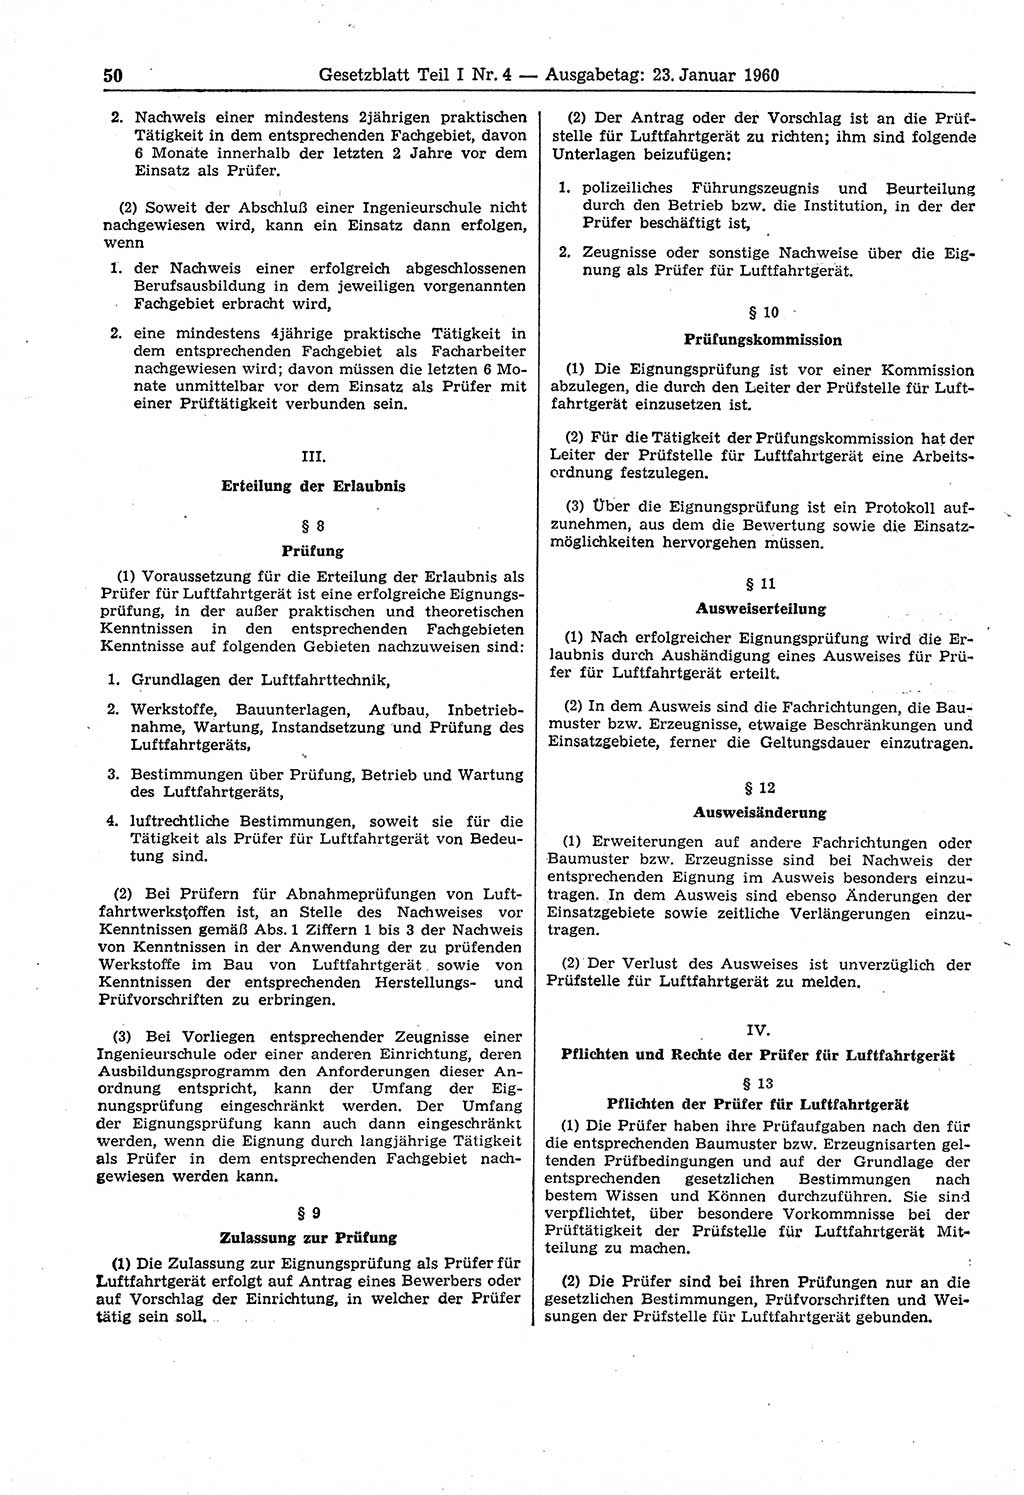 Gesetzblatt (GBl.) der Deutschen Demokratischen Republik (DDR) Teil Ⅰ 1960, Seite 50 (GBl. DDR Ⅰ 1960, S. 50)